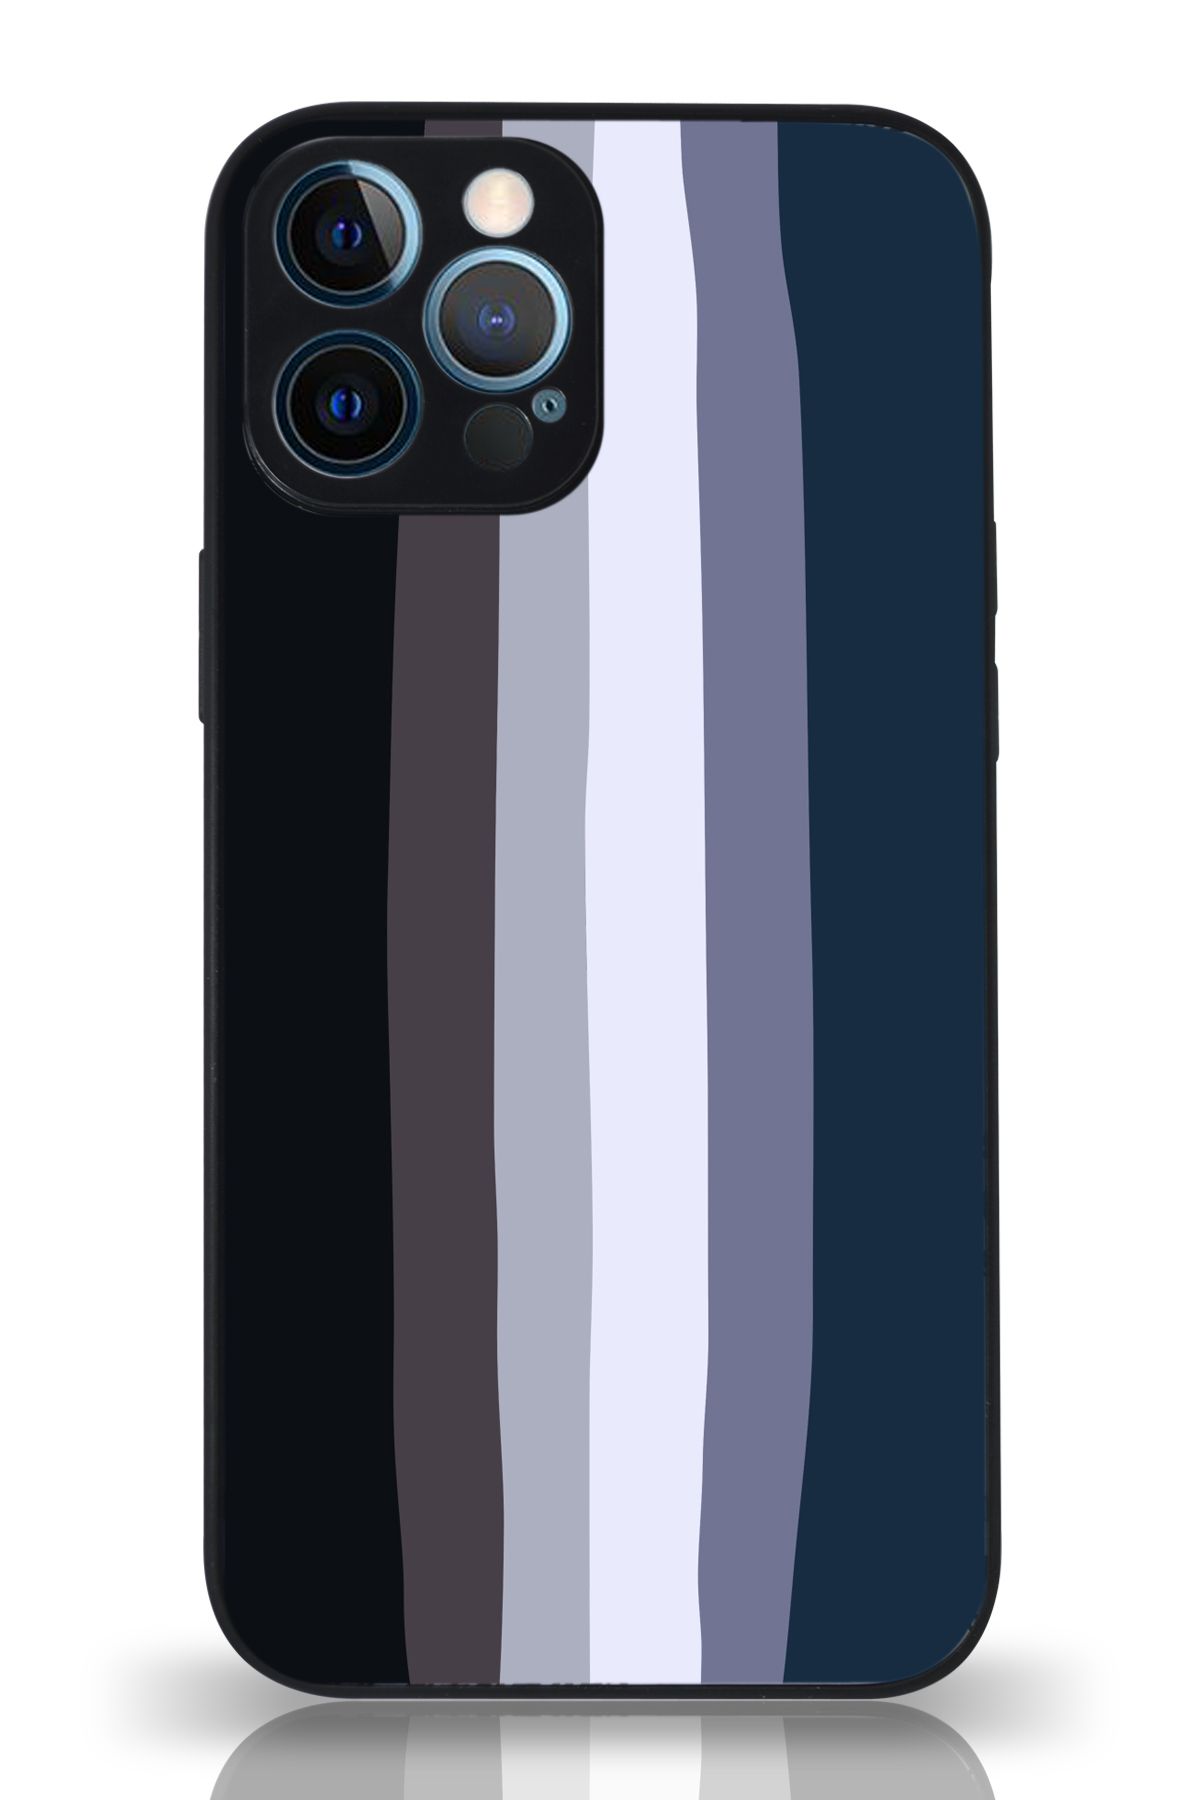 PrintiFy Apple iPhone 12 Pro Max Kamera Korumalı Mavi Gökkuşağı Desenli Cam Kapak Siyah